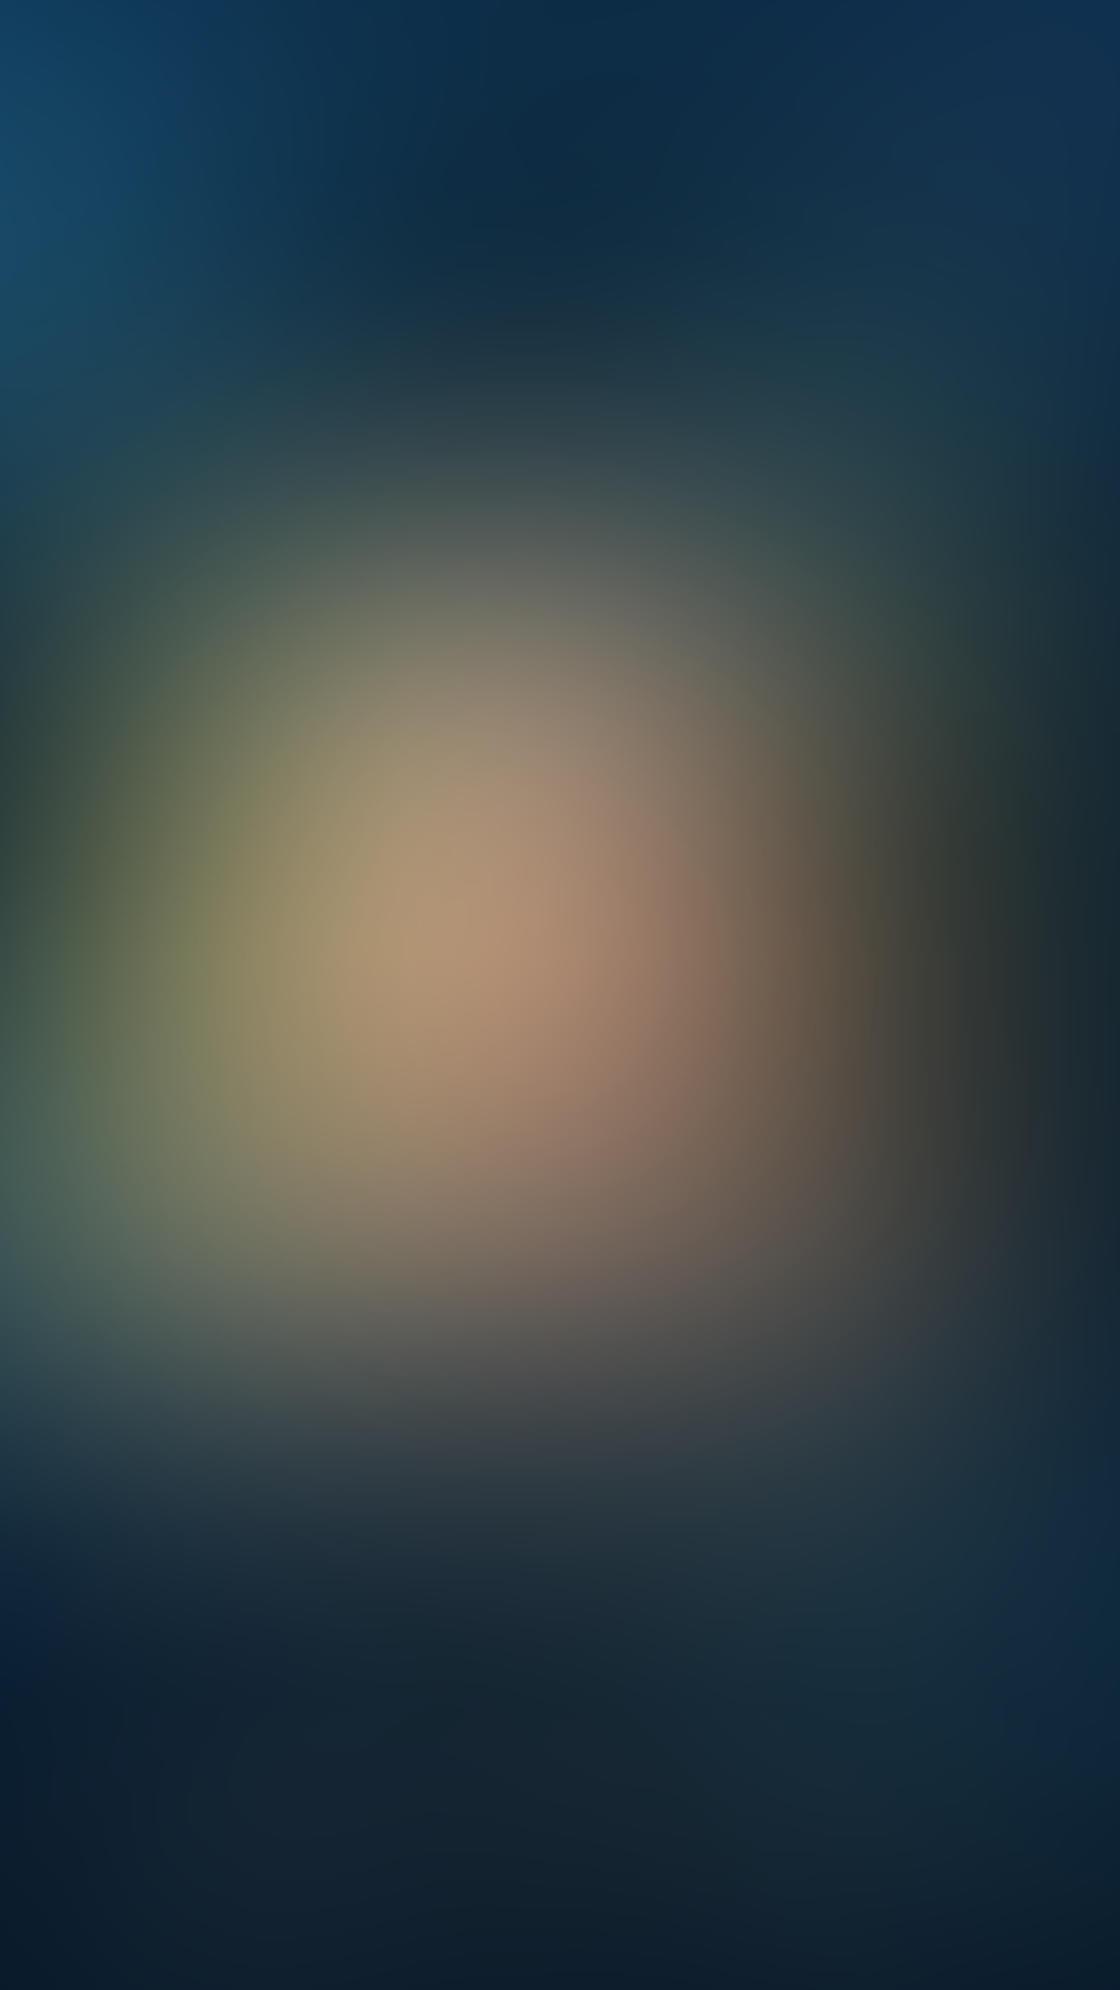 background blur app